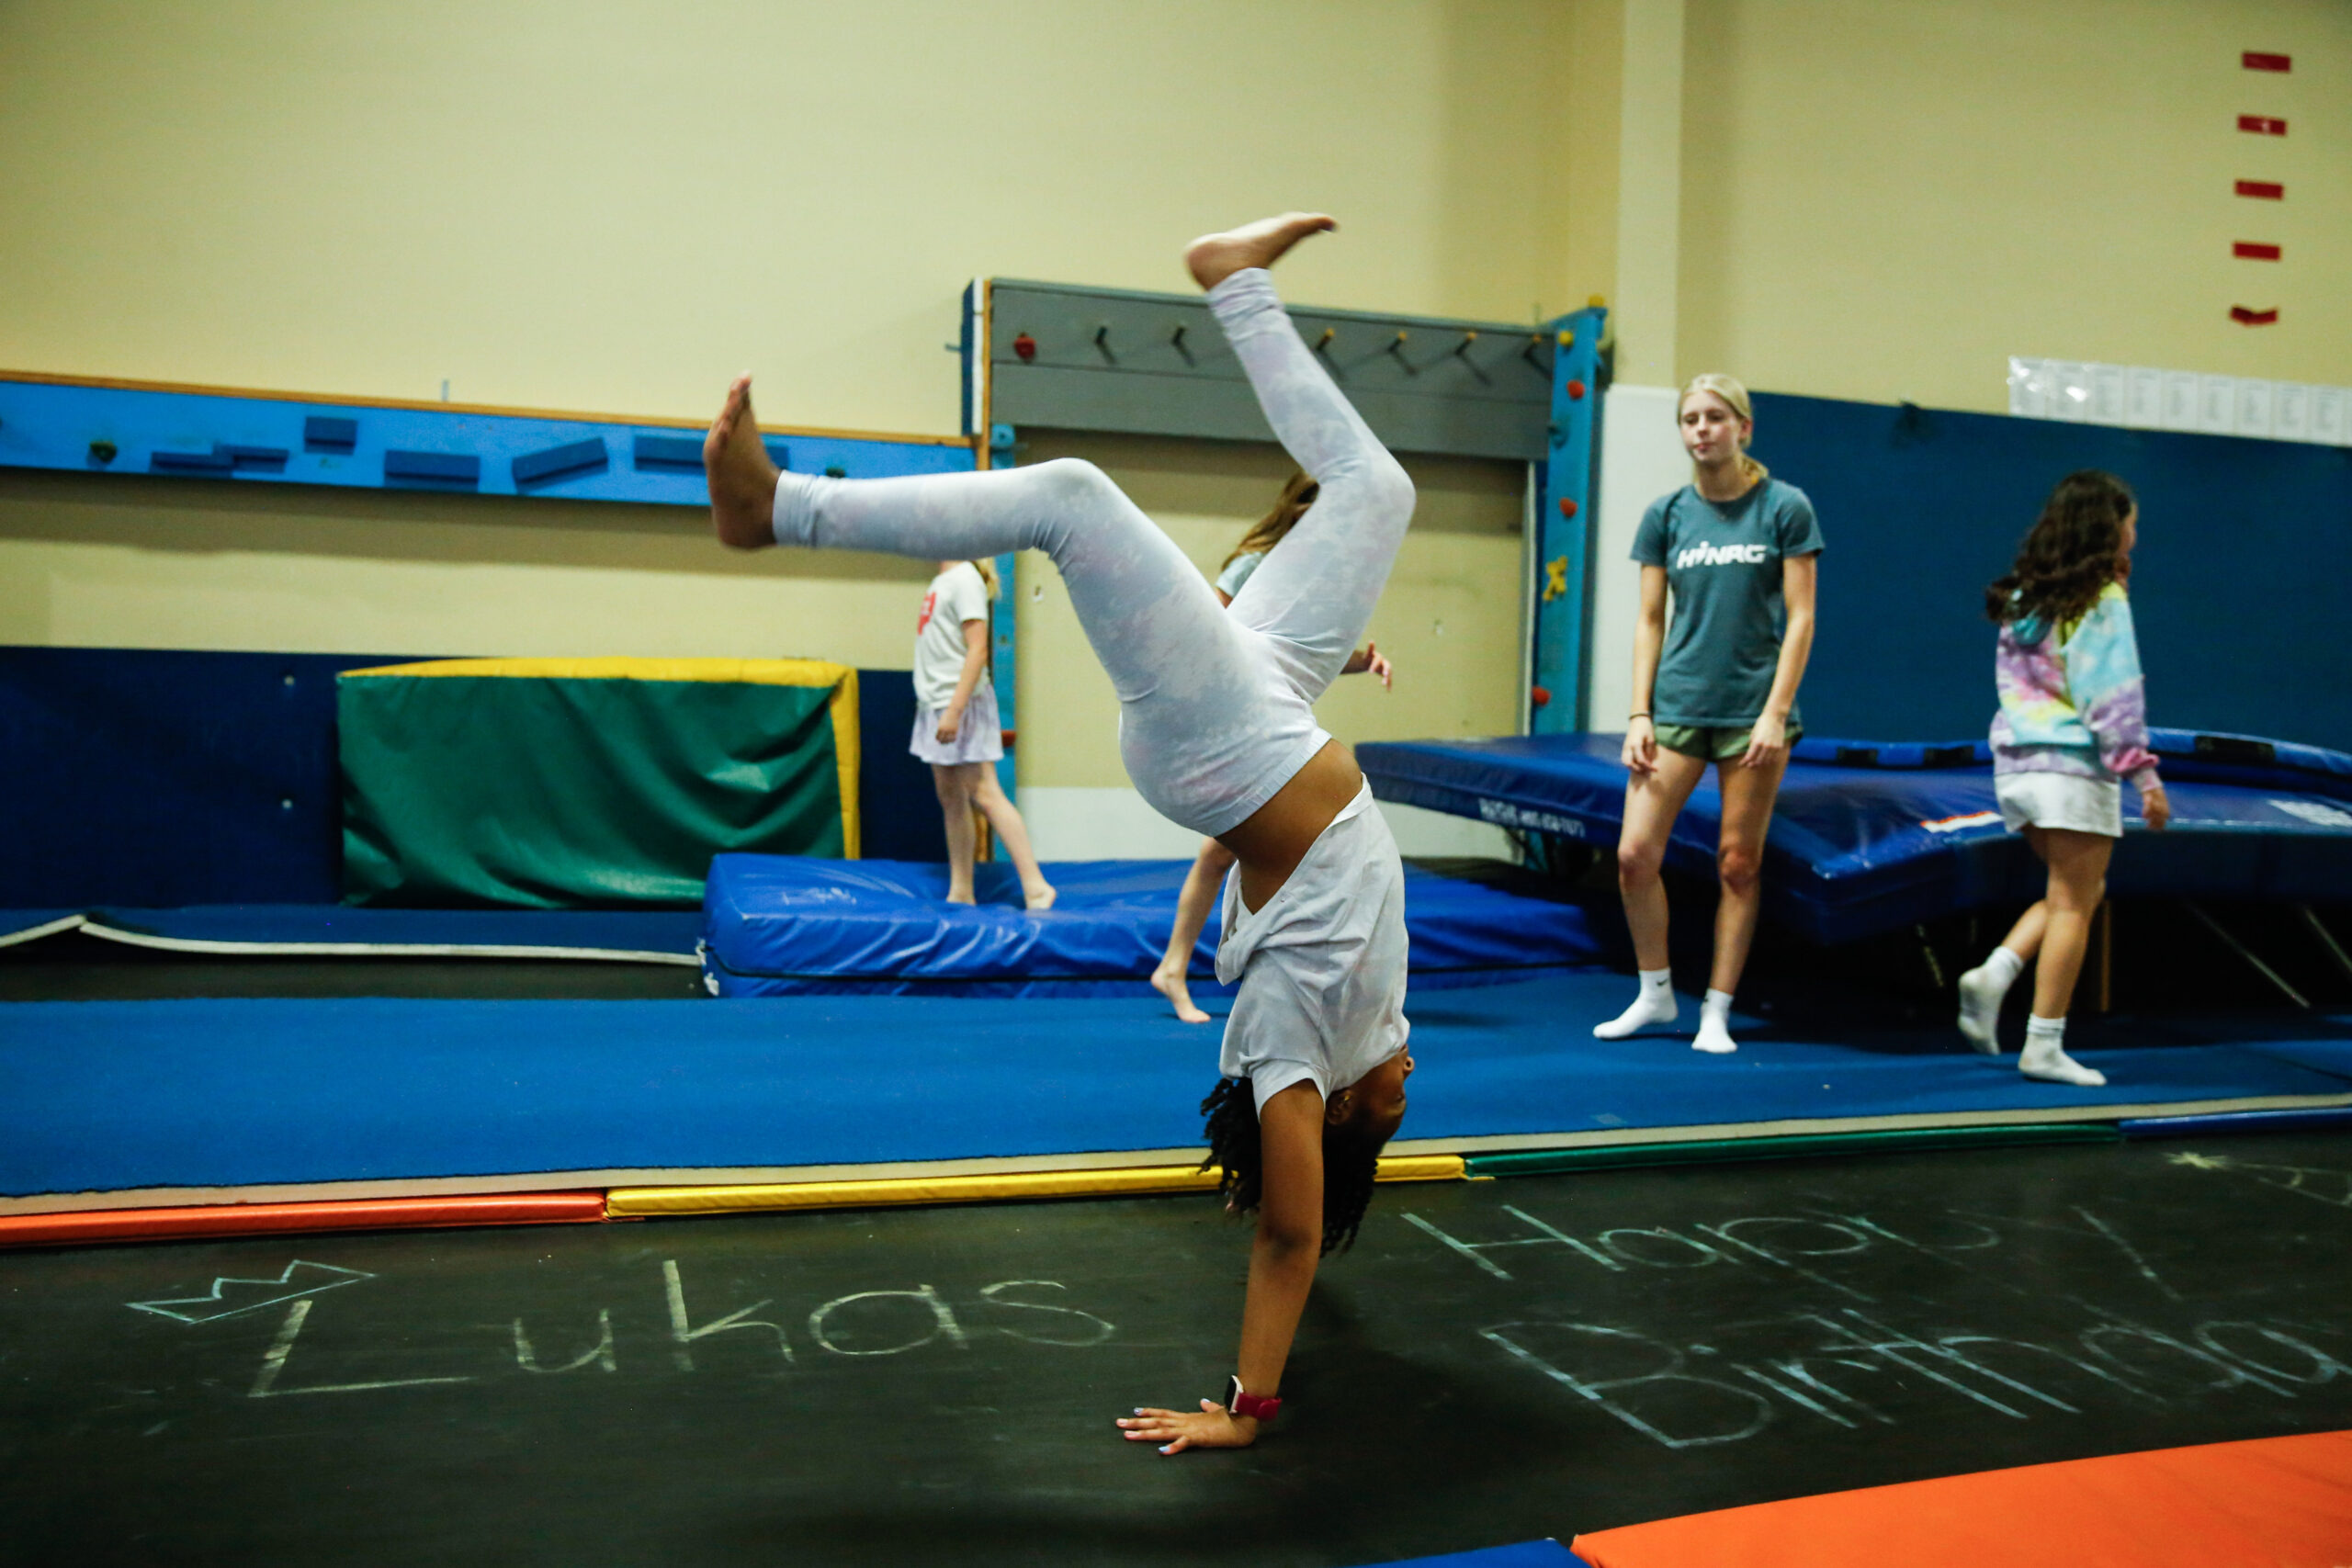 Gymnastics Class Safety For Children